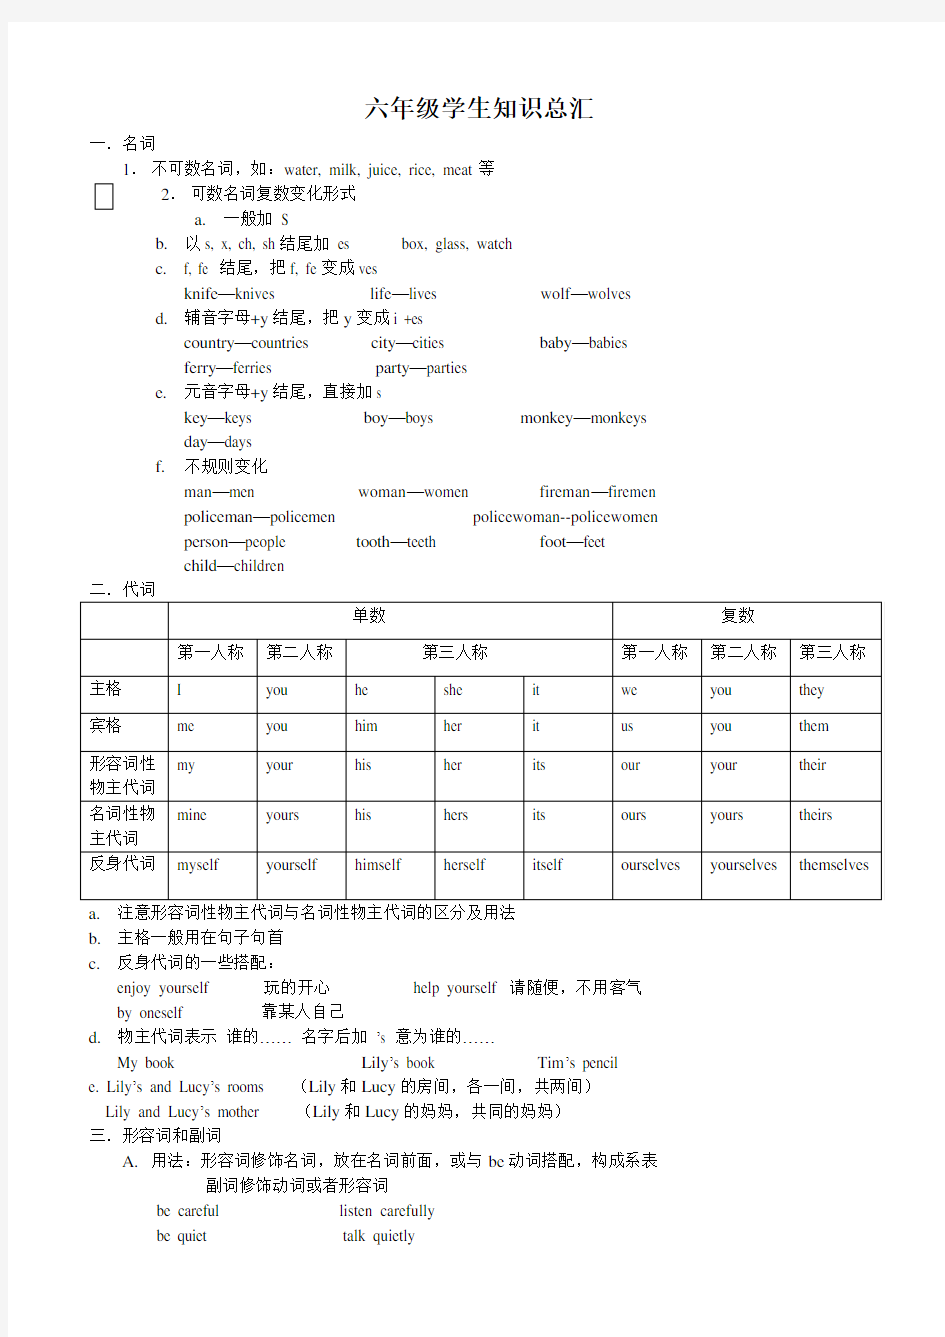 深圳小学六年级应该掌握的英语知识部分汇总